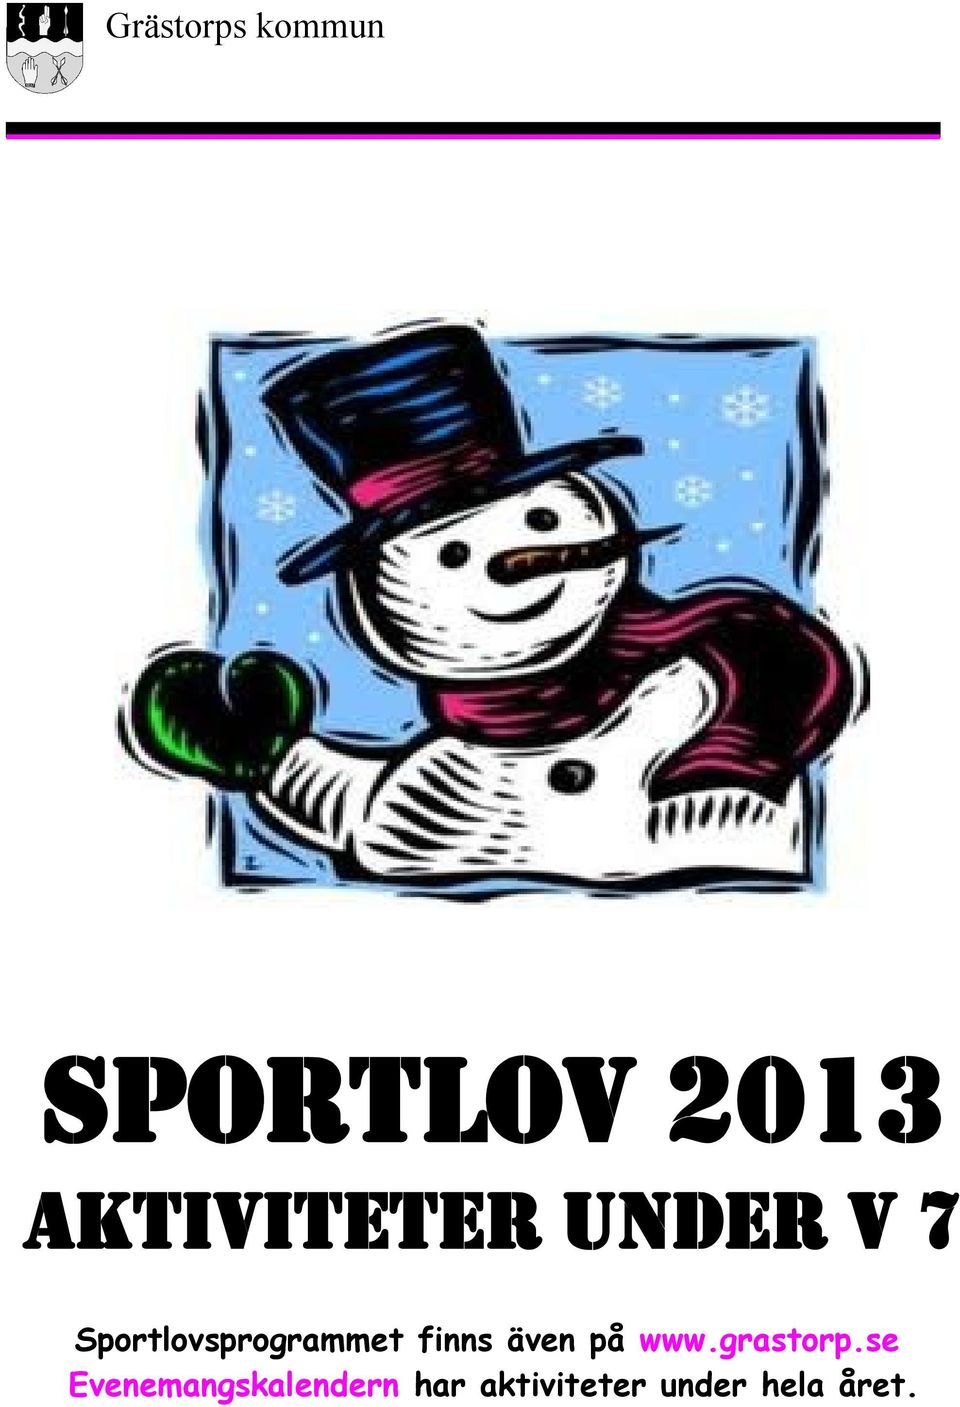 Sportlovsprogrammet finns även på www.